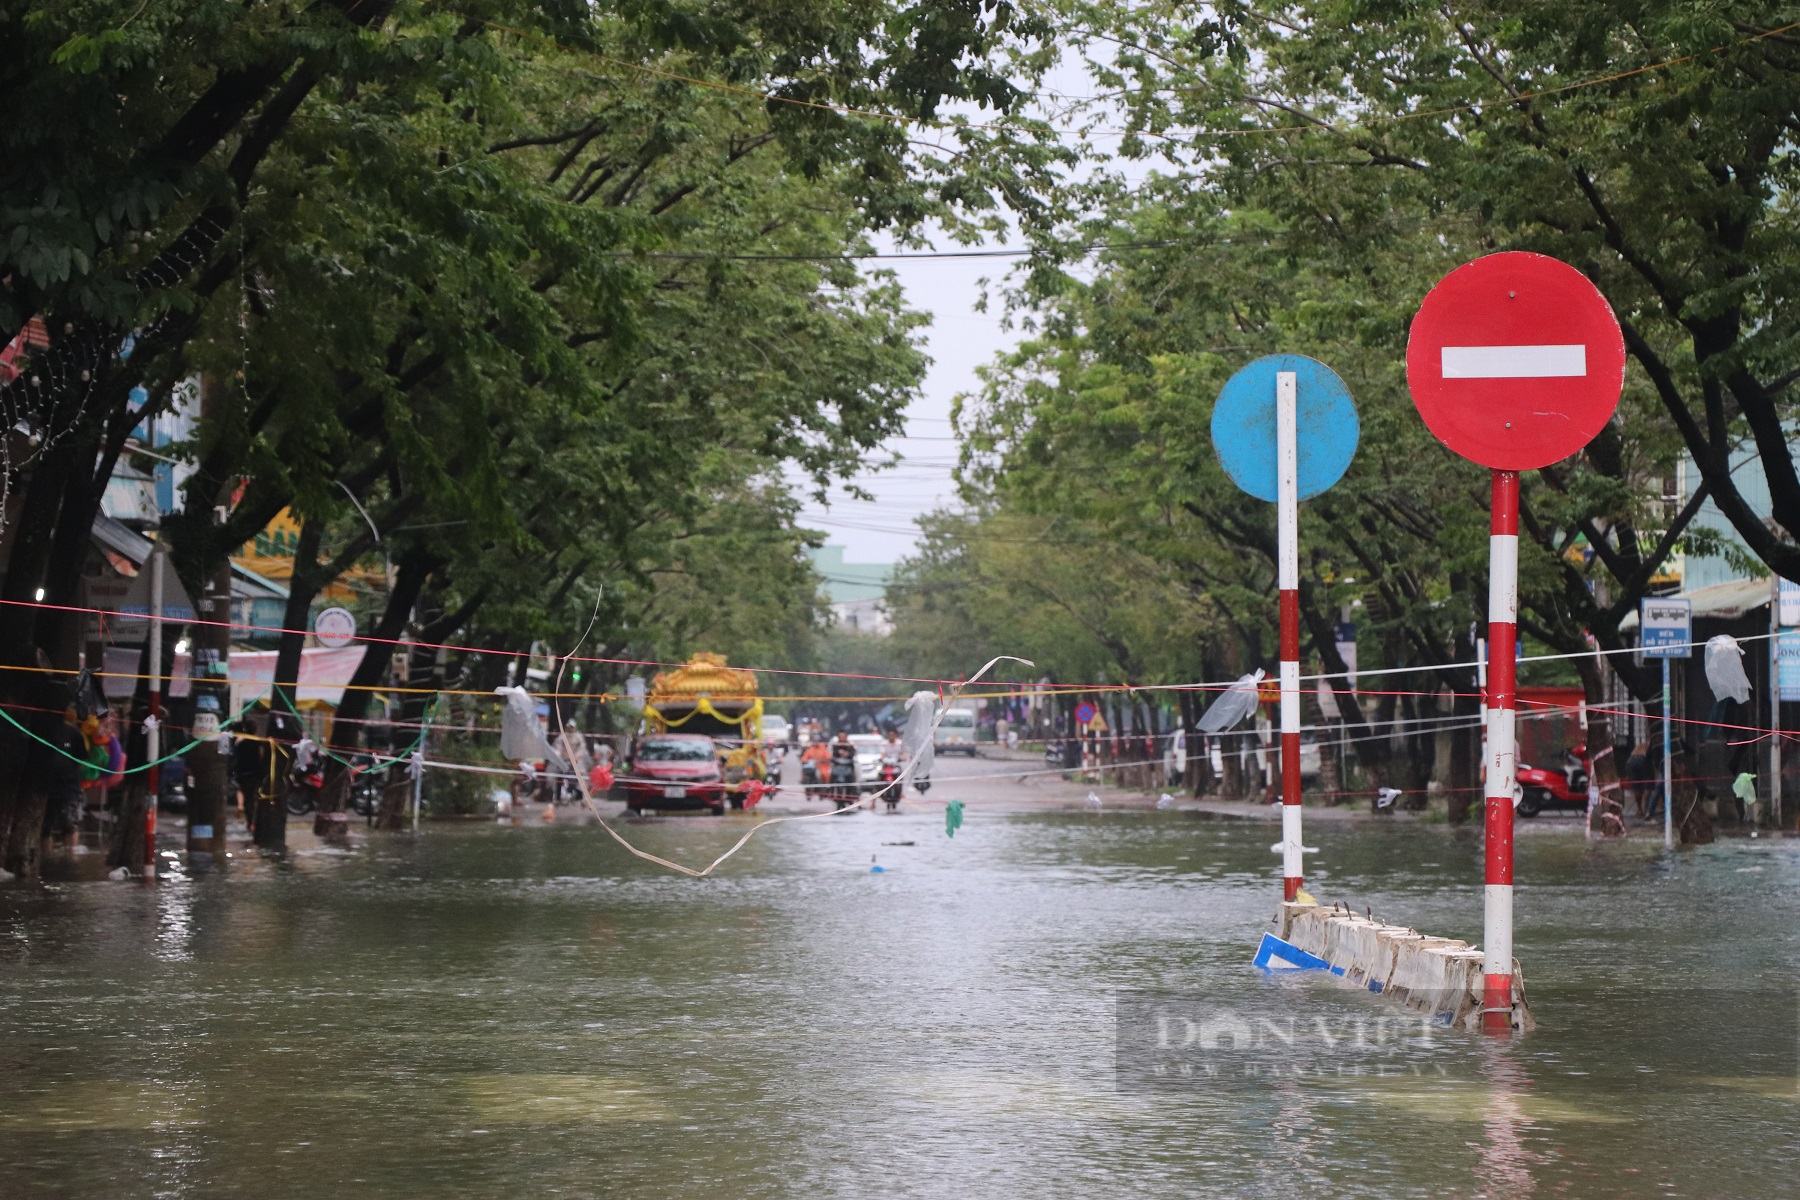 Quảng Nam: Người dân dùng ghe, thuyền di chuyển giữa phố mùa lũ lụt - Ảnh 8.